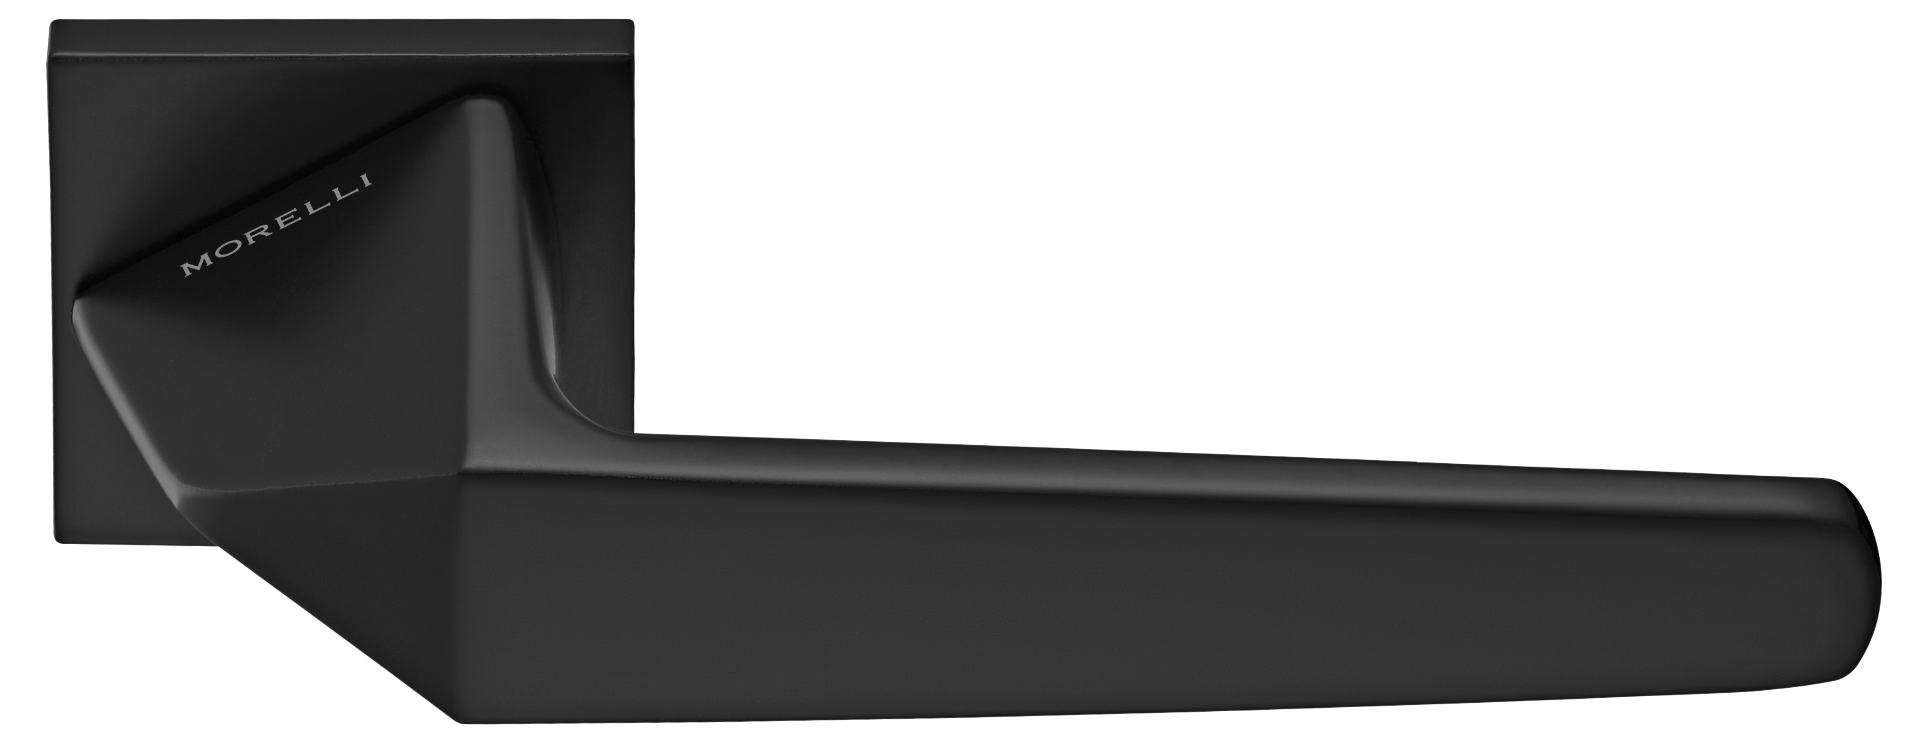 SOUK ручка дверная на квадратной розетке 6 мм, MH-55-S6 BL, цвет - черный фото купить Барнаул